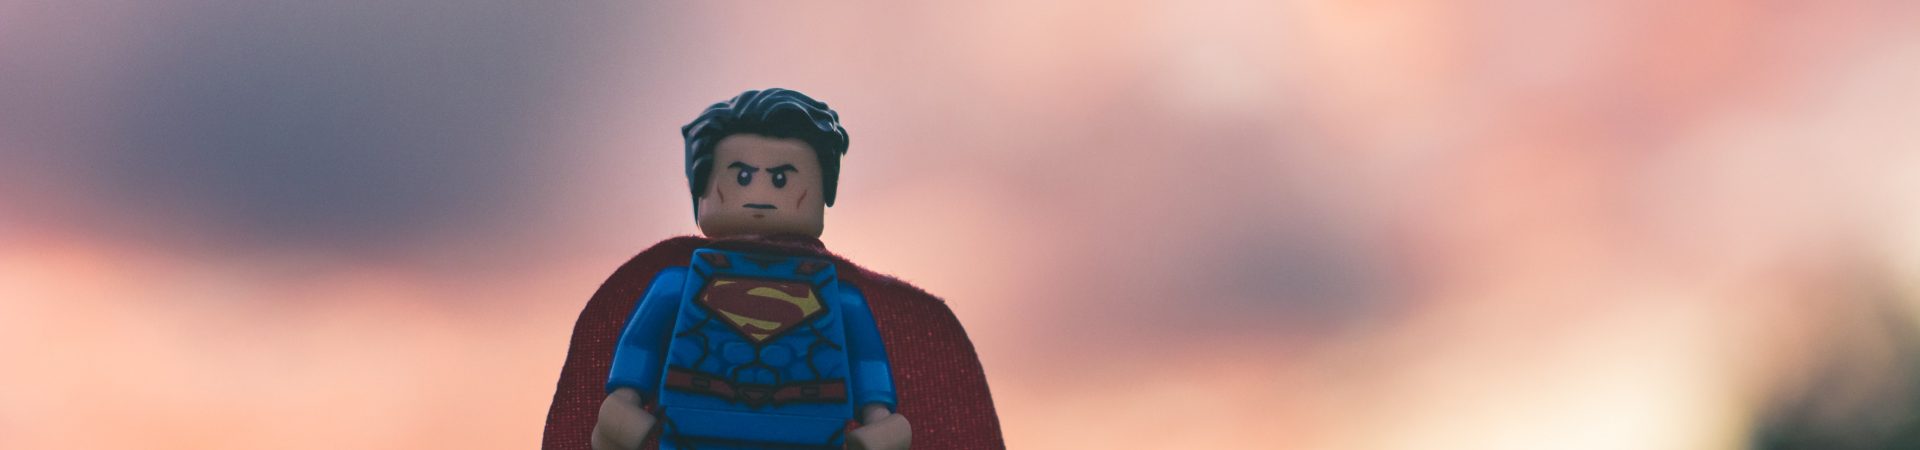 Lege-Superman Figur als Sinnbild für die Heldenreise